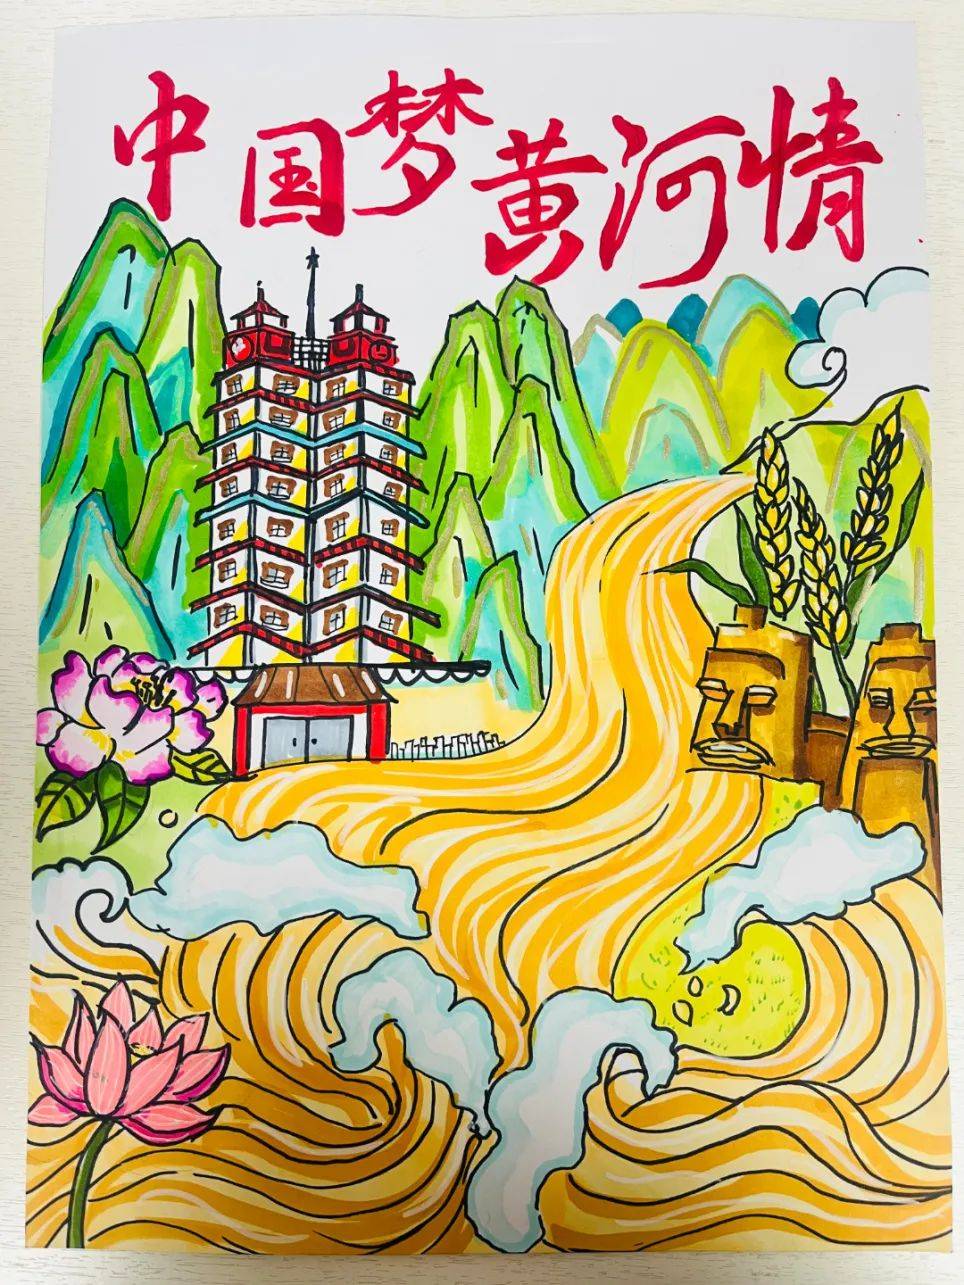 河南省妇女儿童发展中心邀你共赏童画黄河 美好家园线上画展(一)